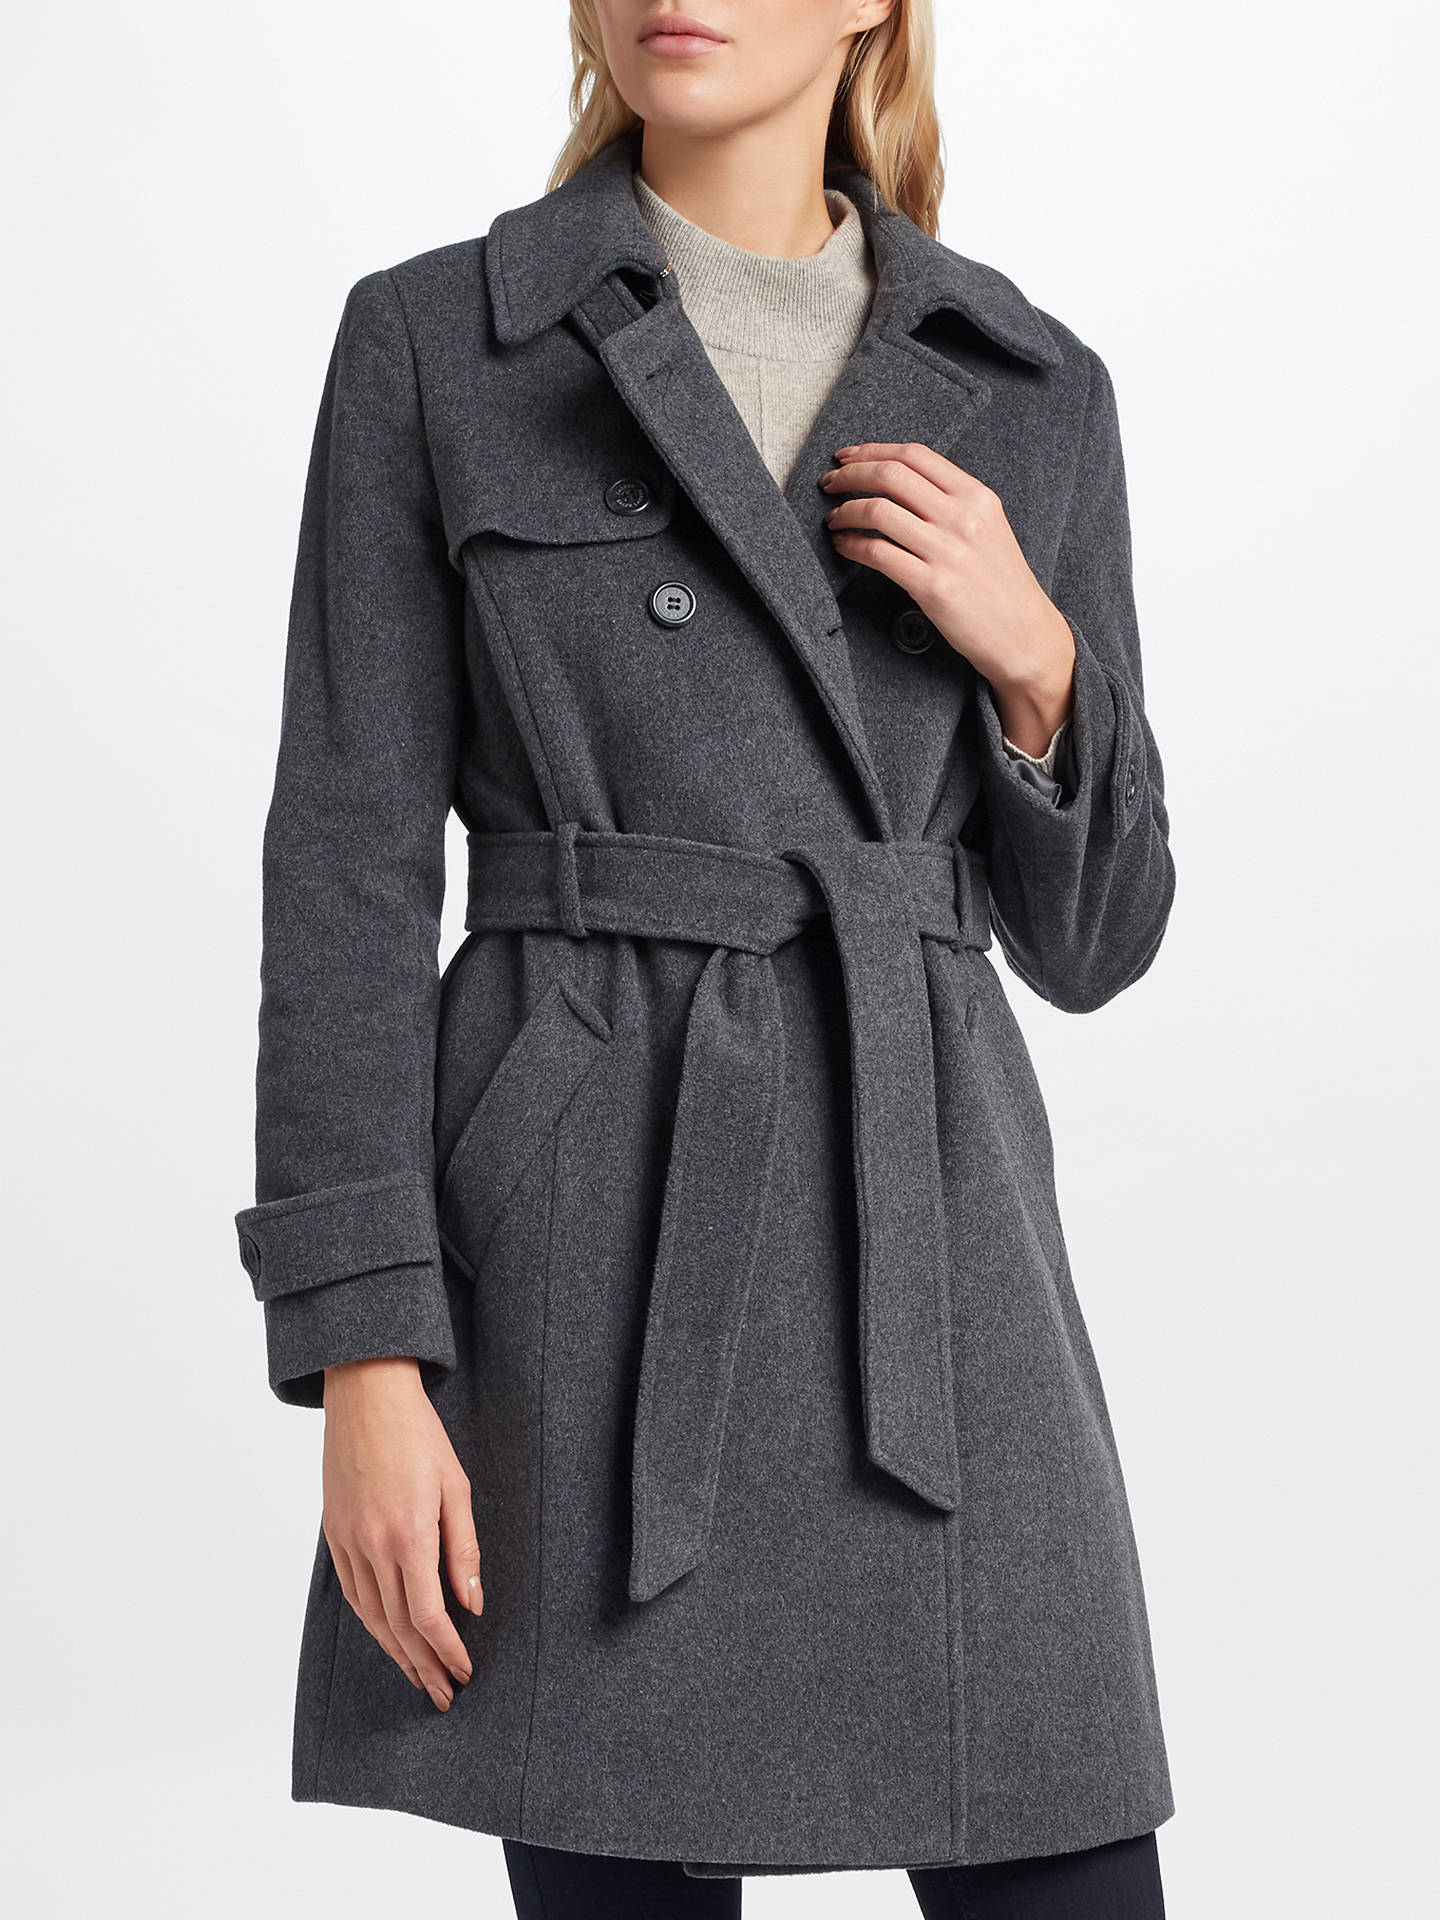 Lauren Ralph Lauren Wool Blend Trench Coat, Grey at John Lewis & Partners